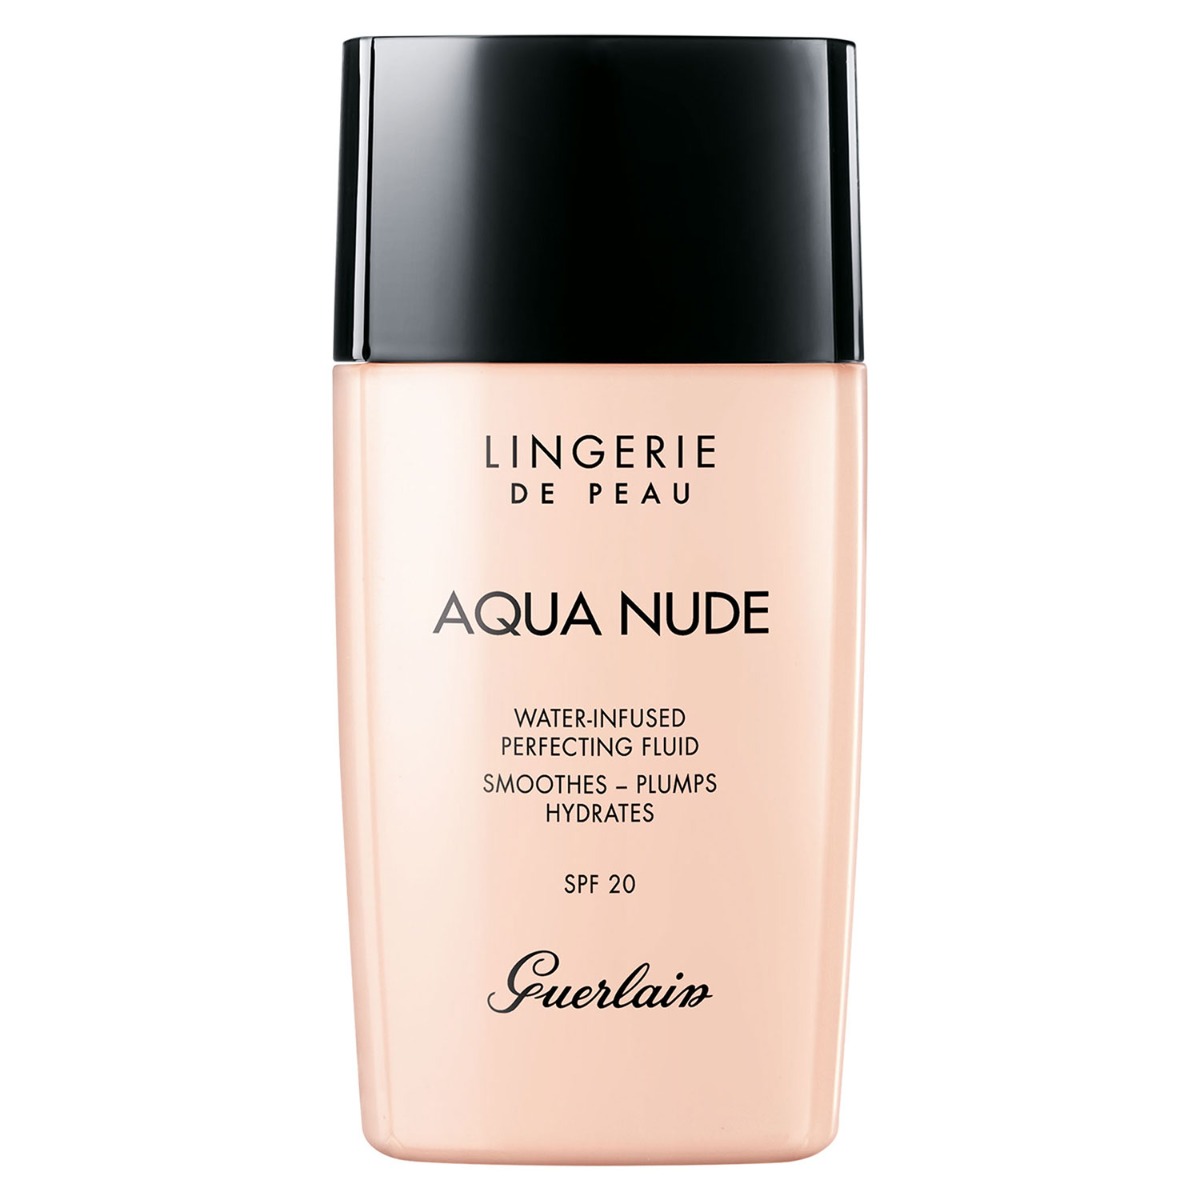 Guerlain Lingerie de Peau Aqua Nude Foundation, 30ml